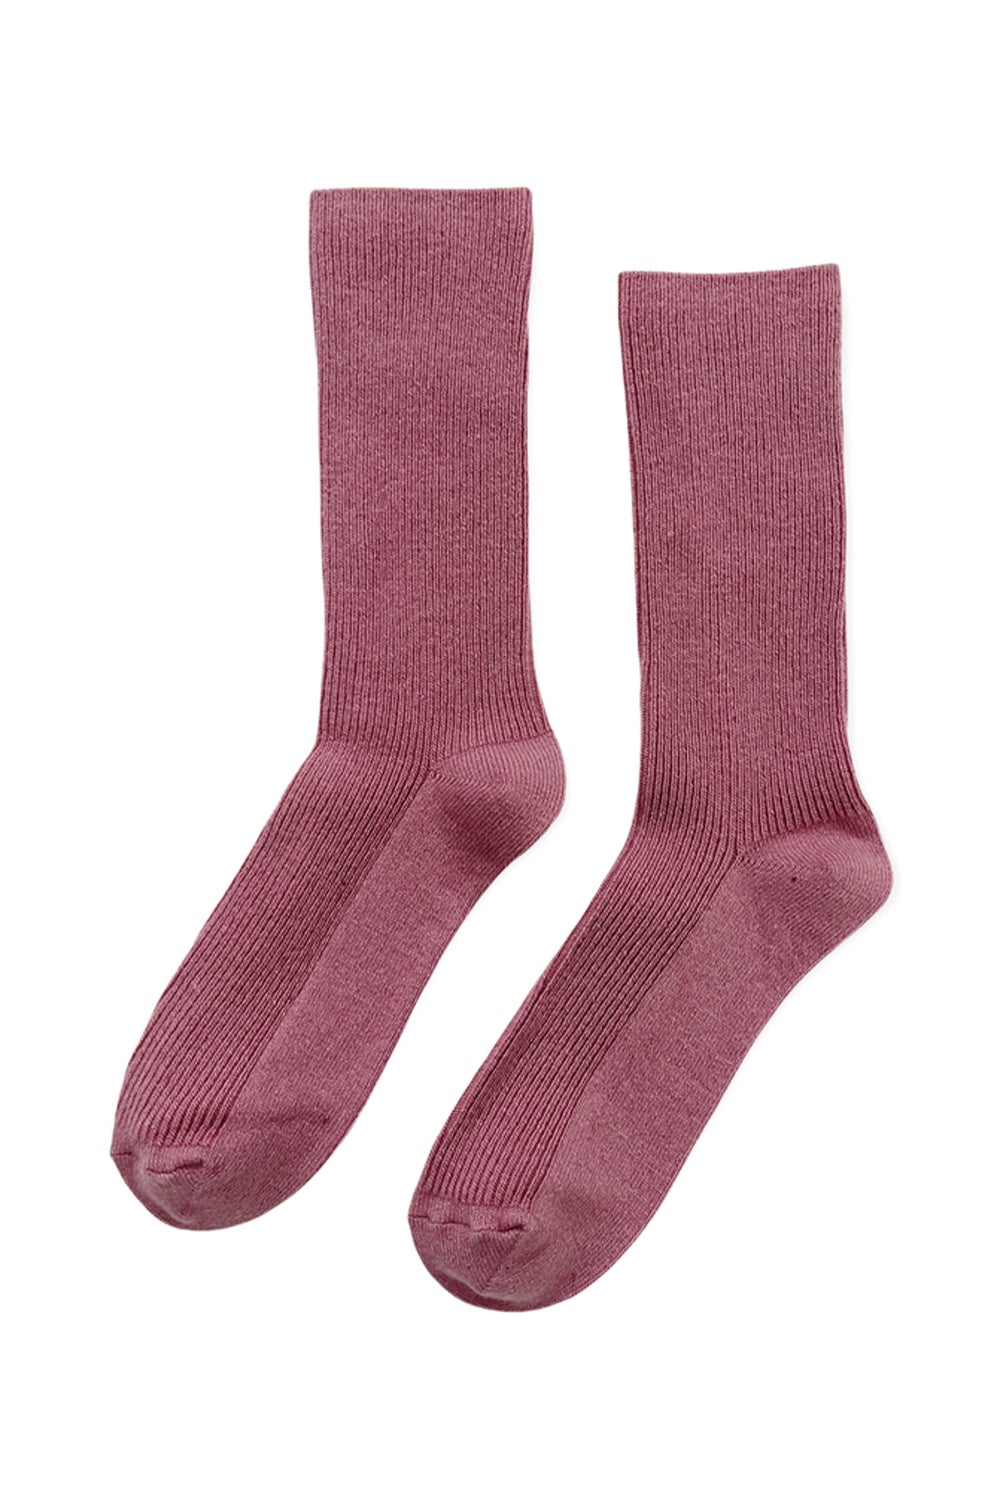 Le Bon Shoppe Grandpa Solid Socks